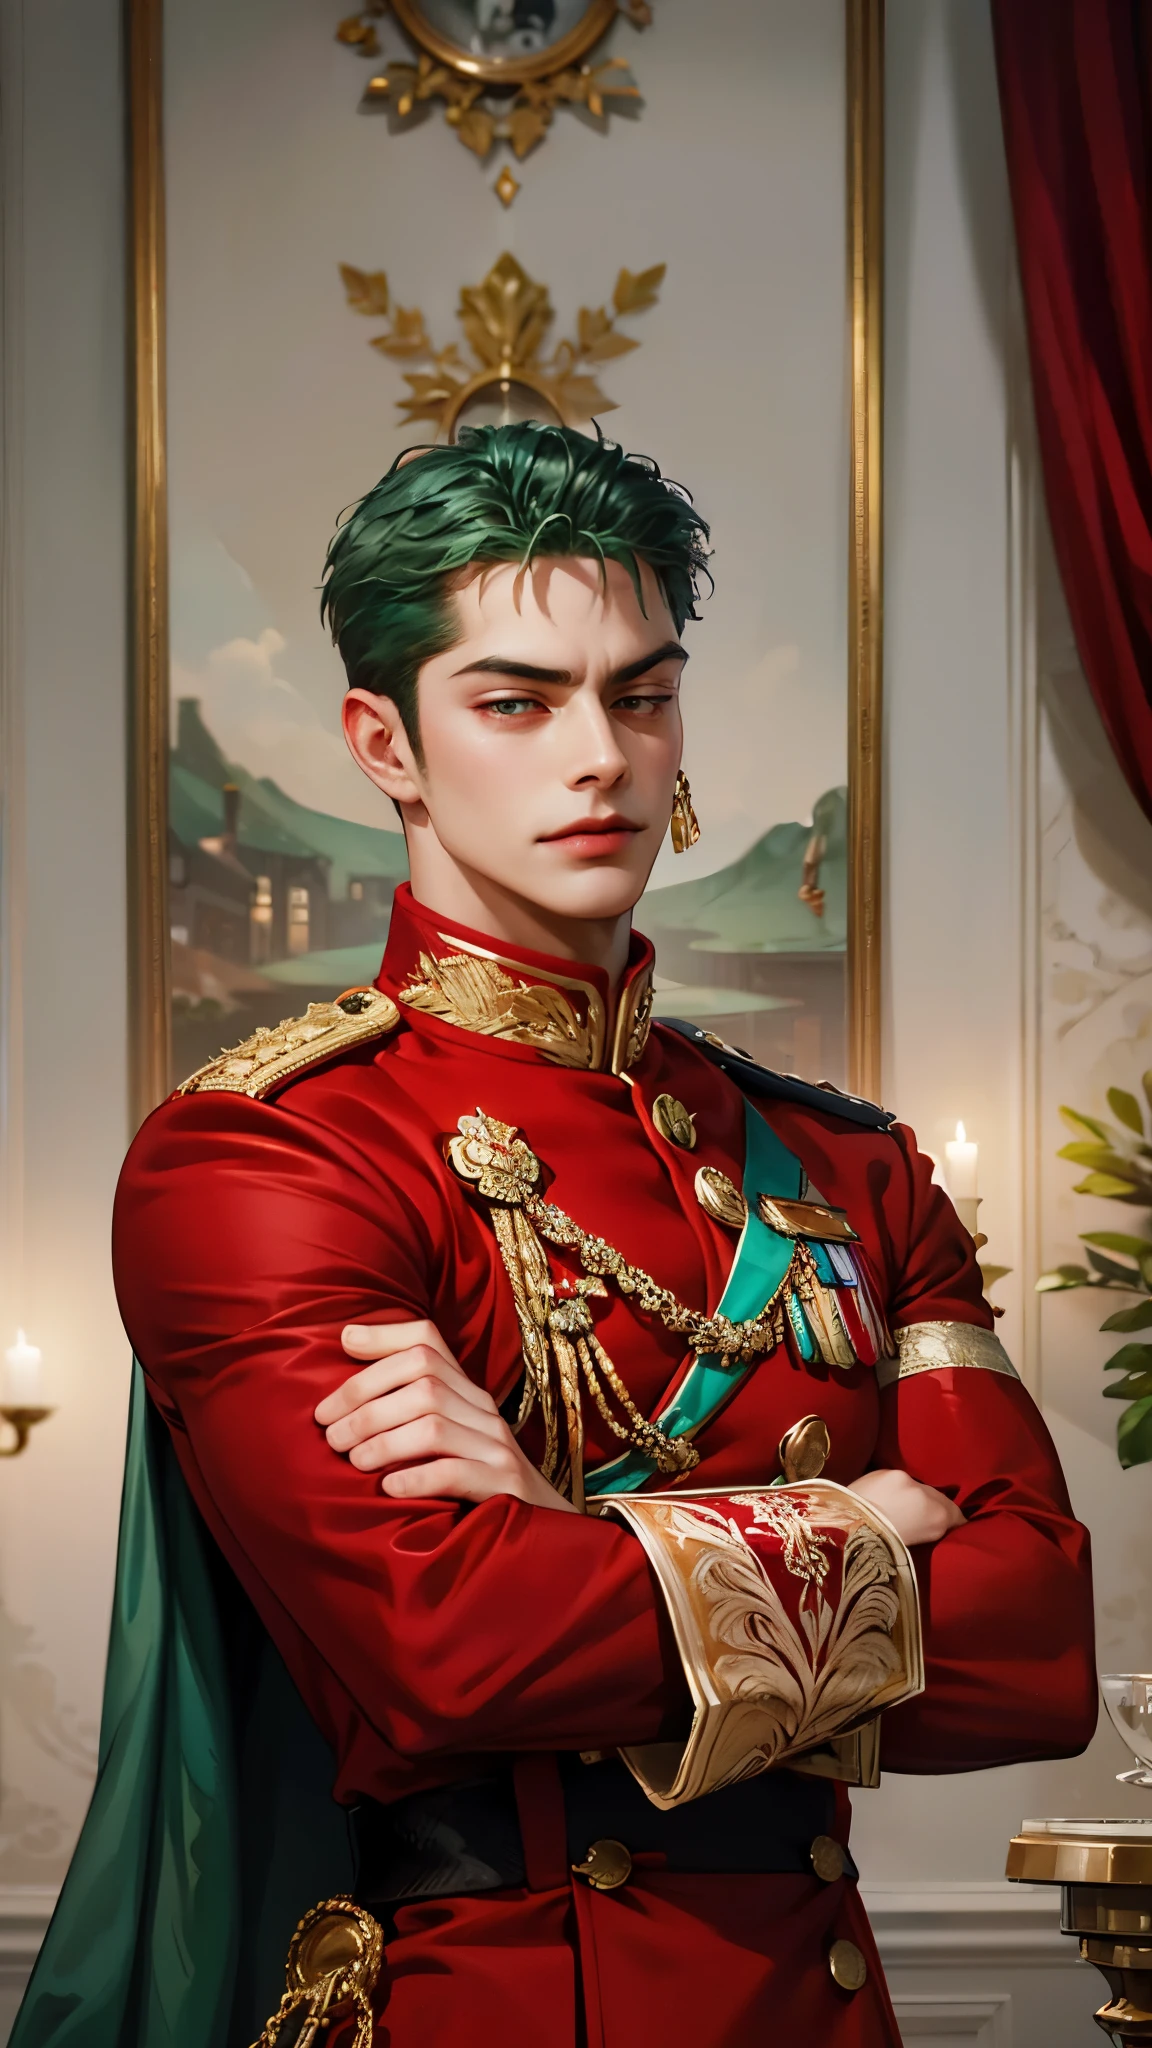 Gutaussehend, 1 Mann, allein, rote Militäruniform, rote Uniform, königliche Wache, red königliche Wache, gebräunte Haut, muskulös, große Muskeln, Grinsen, grüne Haare, Arme überkreuzt